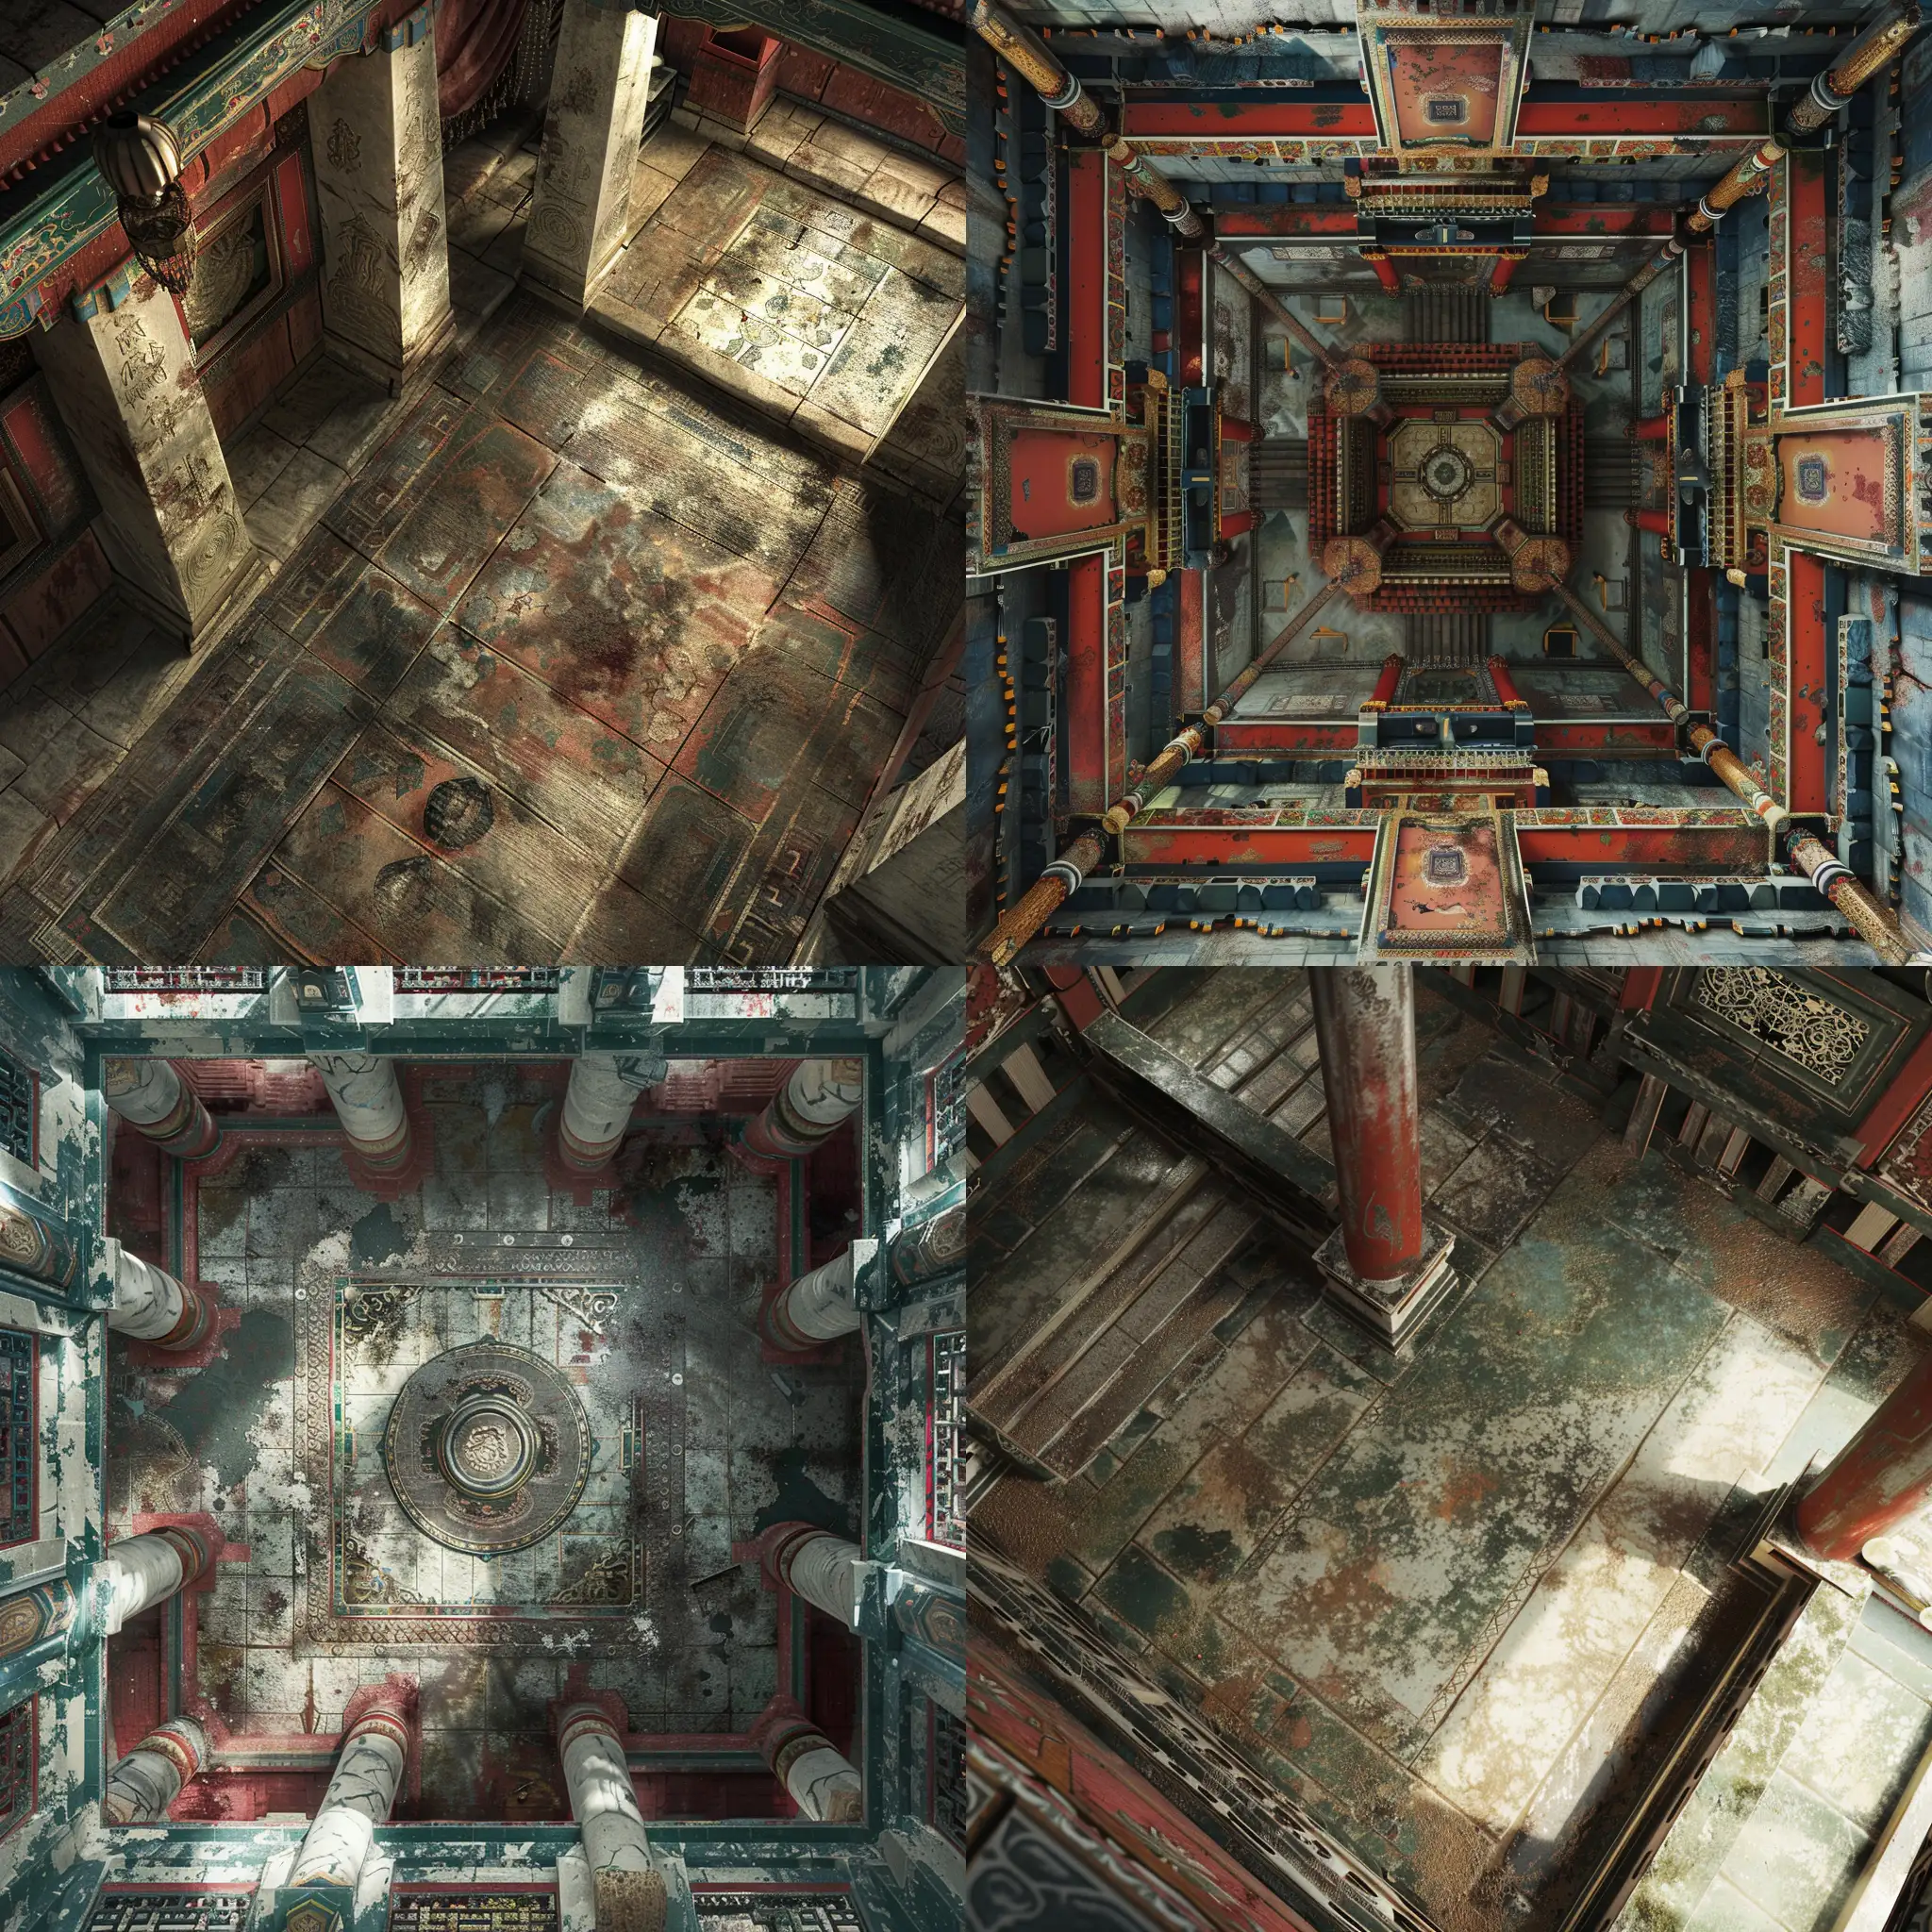 Realistic-Tibetan-Floor-Architecture-HighDefinition-Birdseye-View